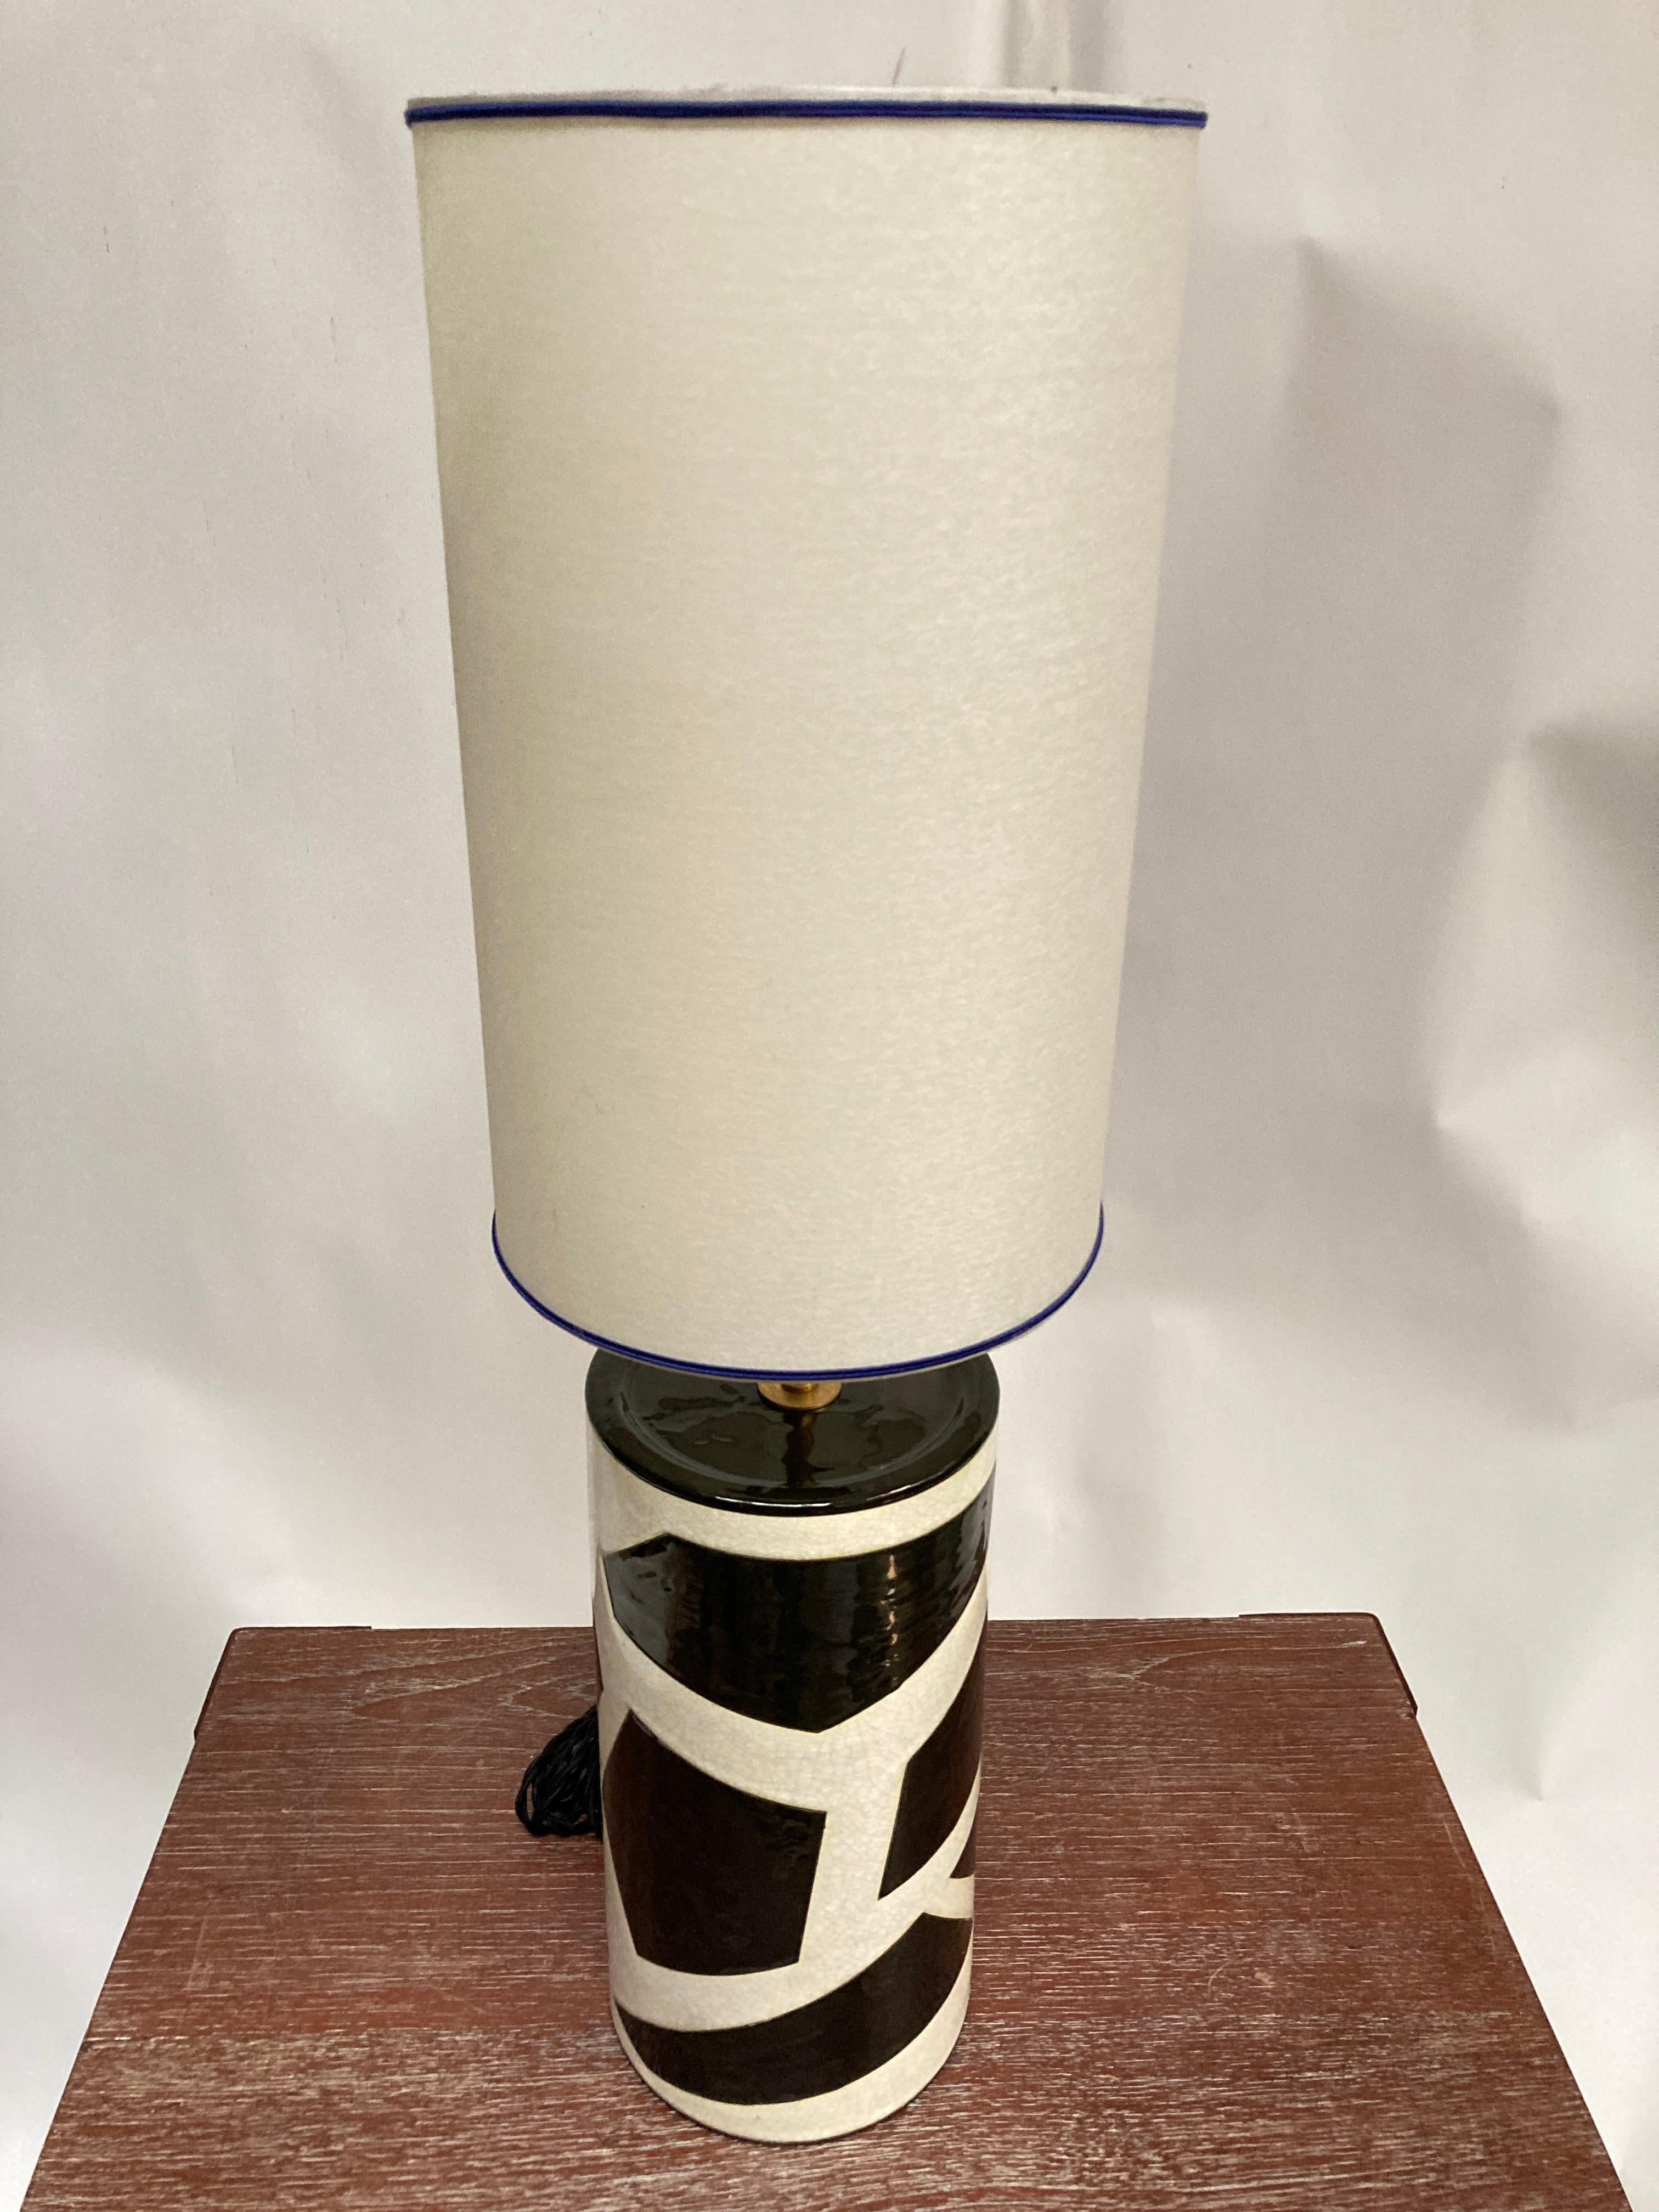 Seltene  Keramiklampe aus den 1980er Jahren von Emaux de Longwy  ( Nordostfrankreich )
Typisches 80er-Jahre-Design
Maße ohne Schirm angegeben
Kein Schatten enthalten